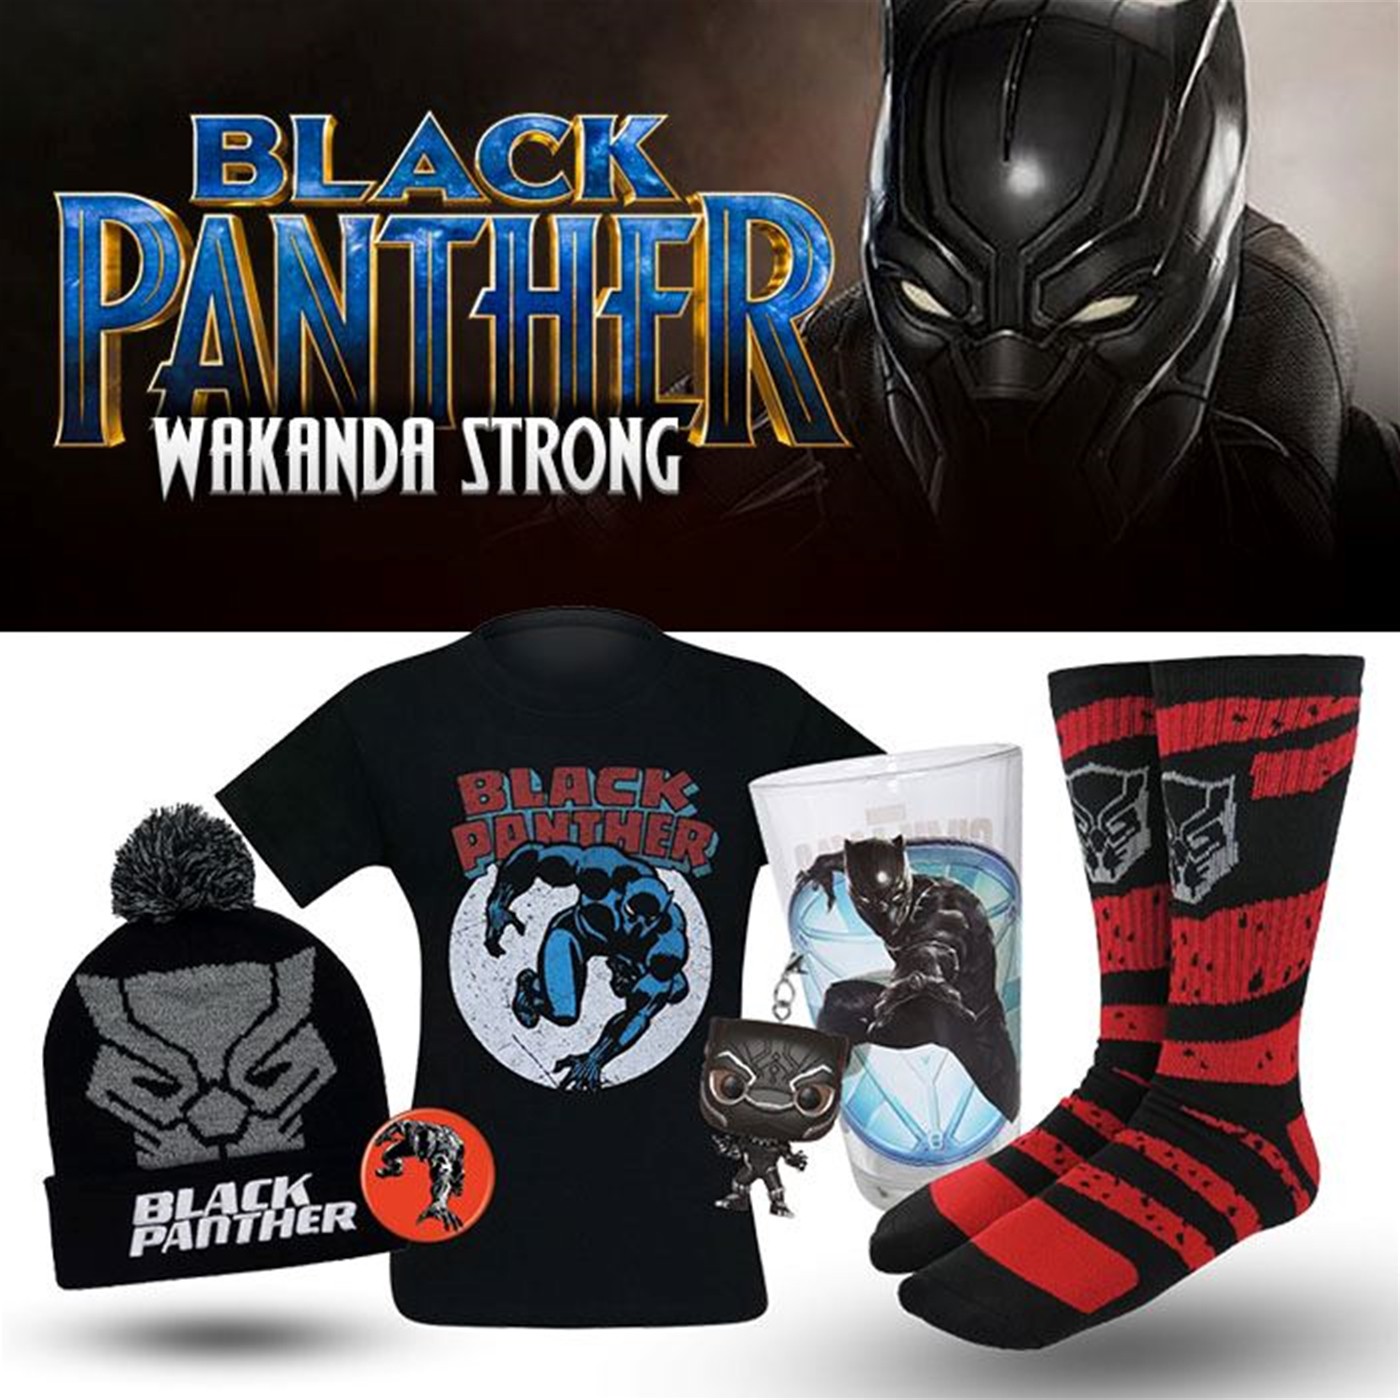 HeroBox Black Panther Wakanda Strong Edition